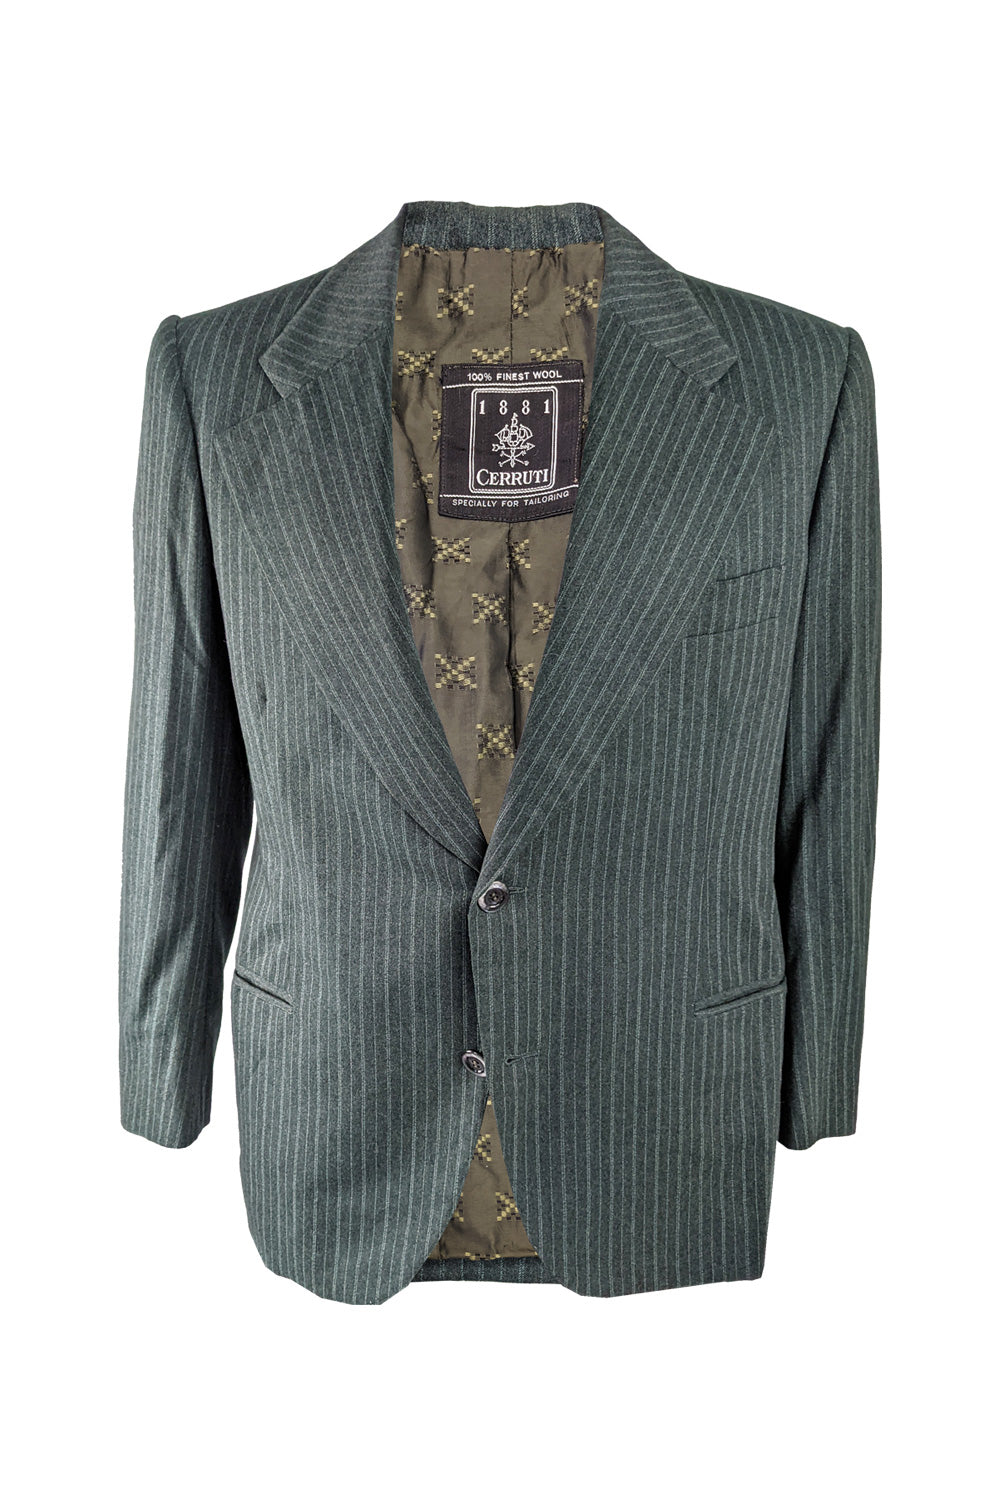 CERRUTI1881 wool  tailored jacket size46